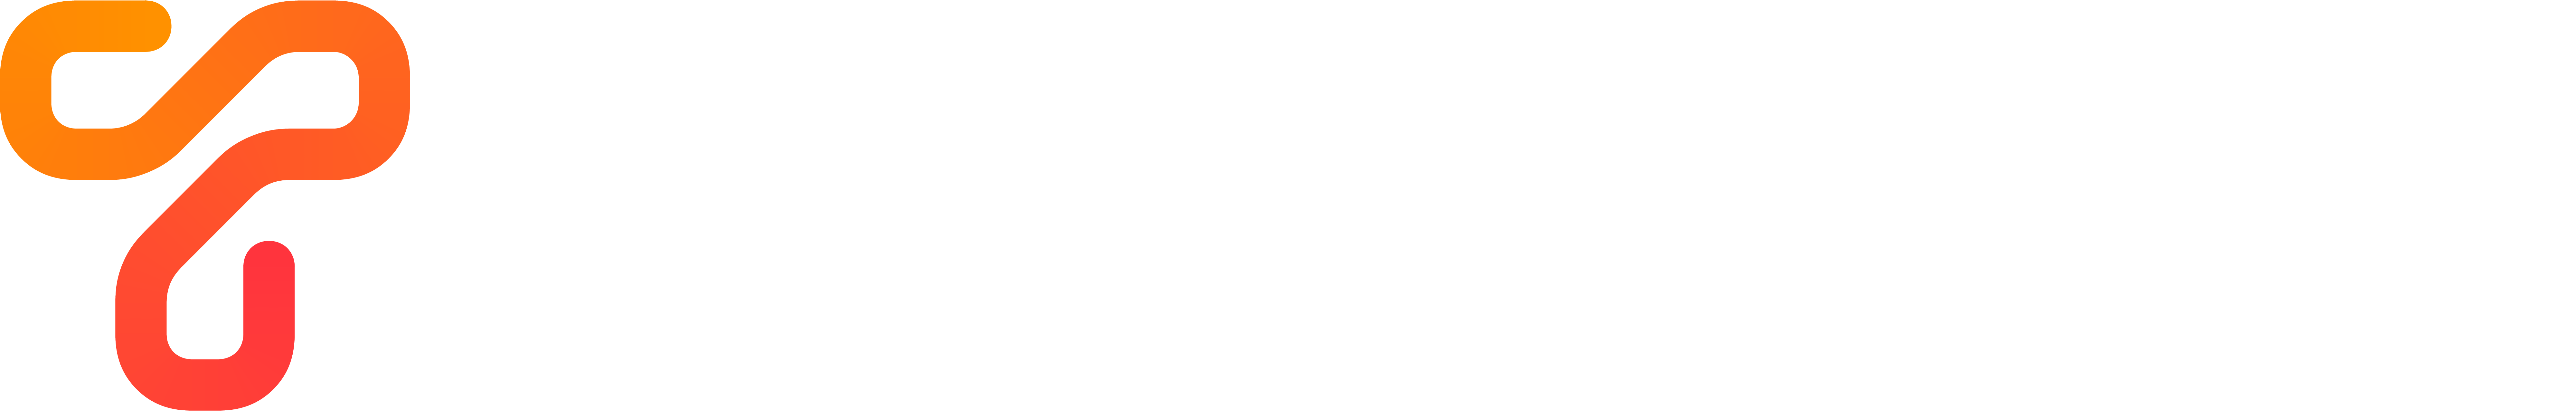 Image Logo (White Wordmark) no TM